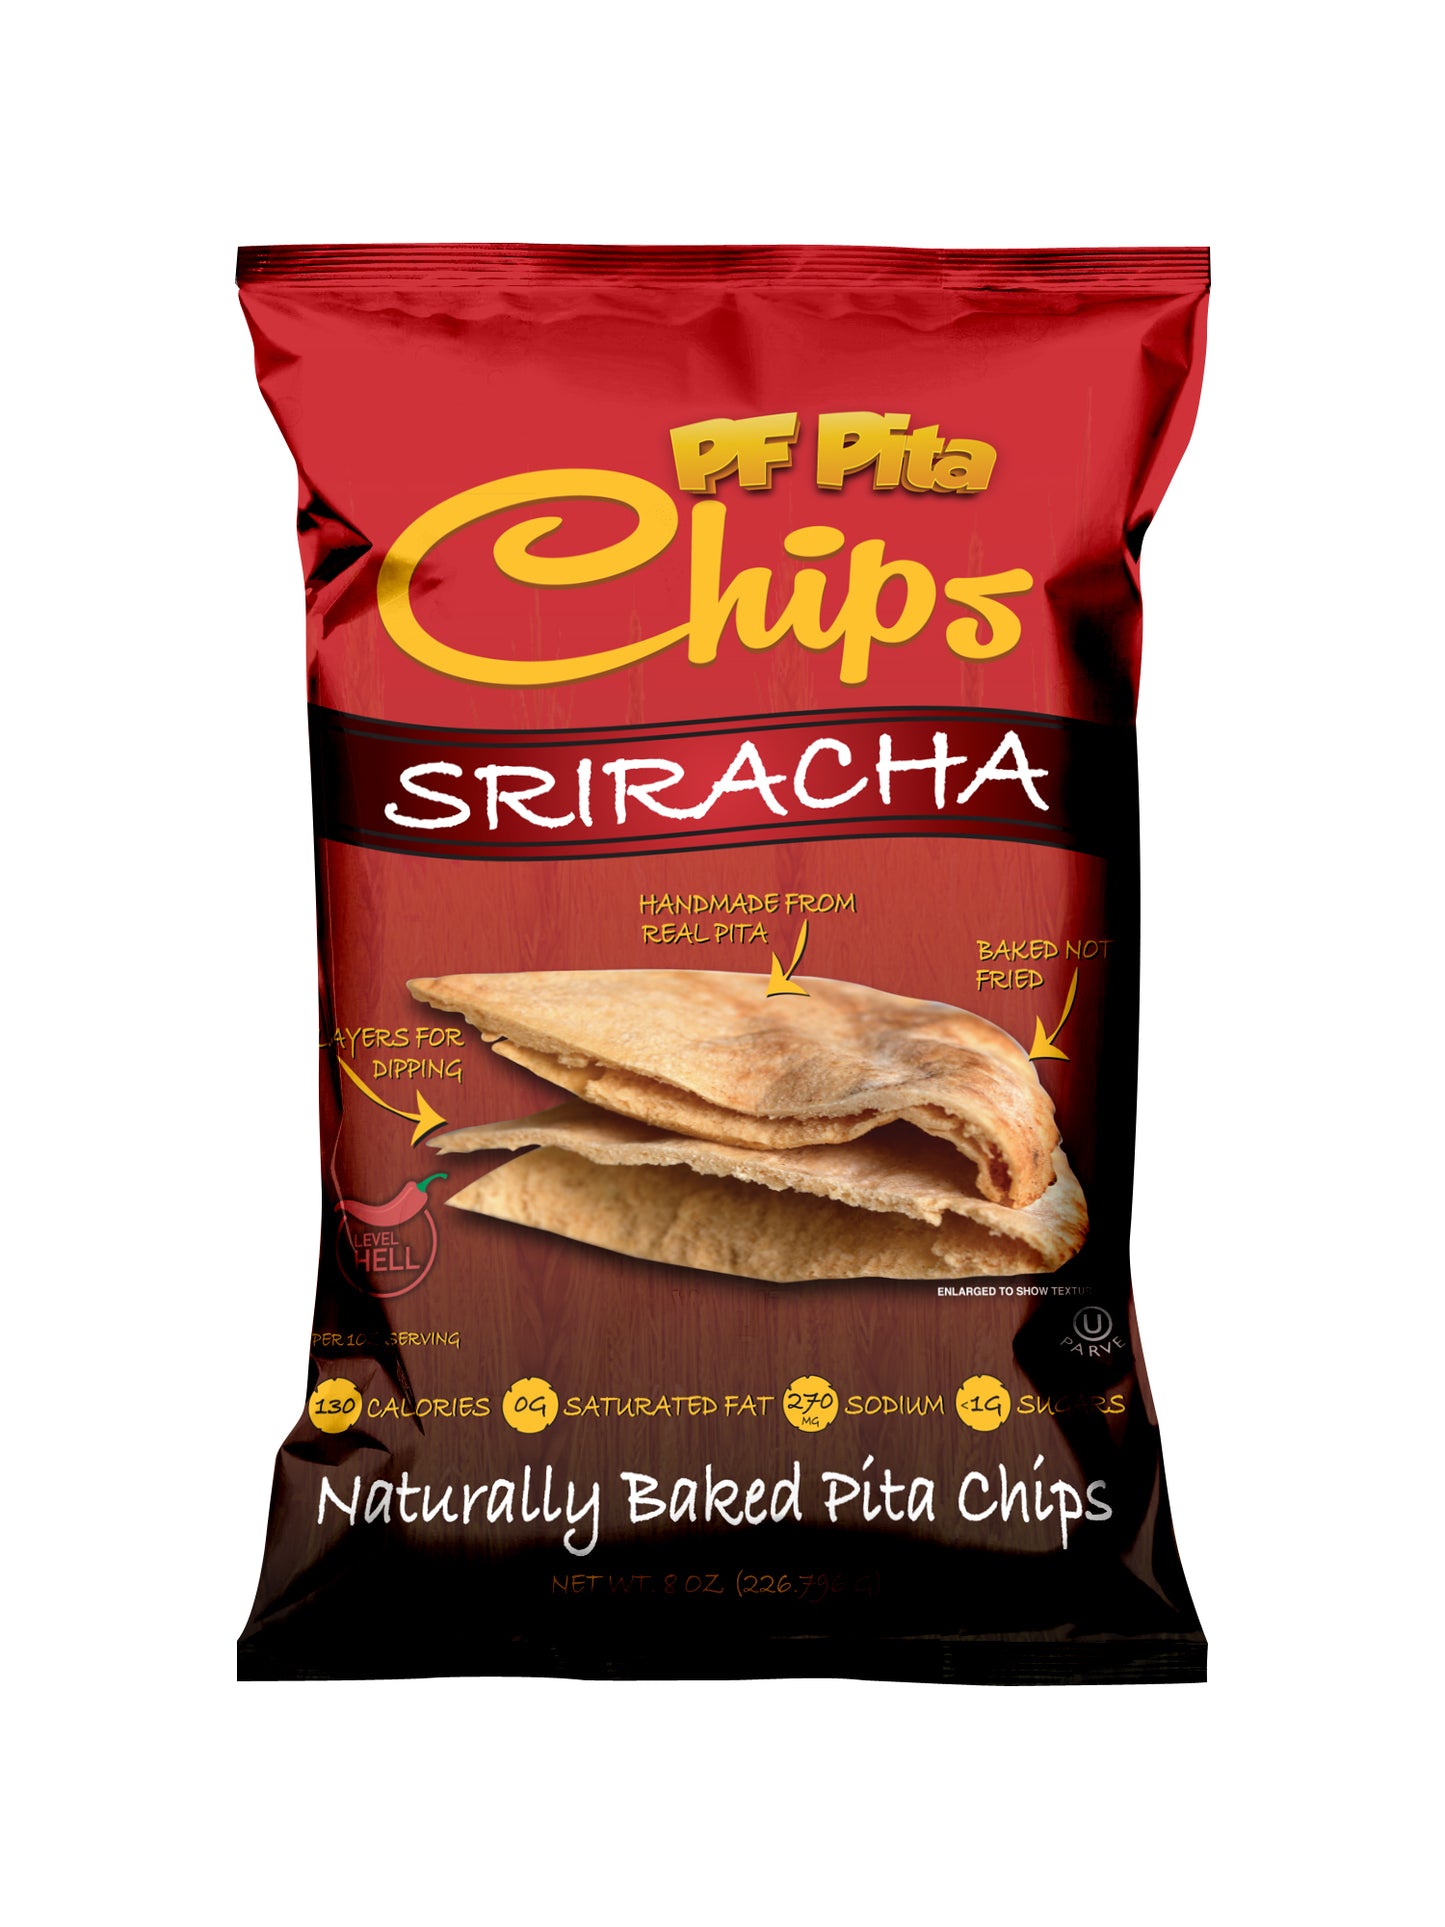 PF Pita Chips " SRIRACHA "